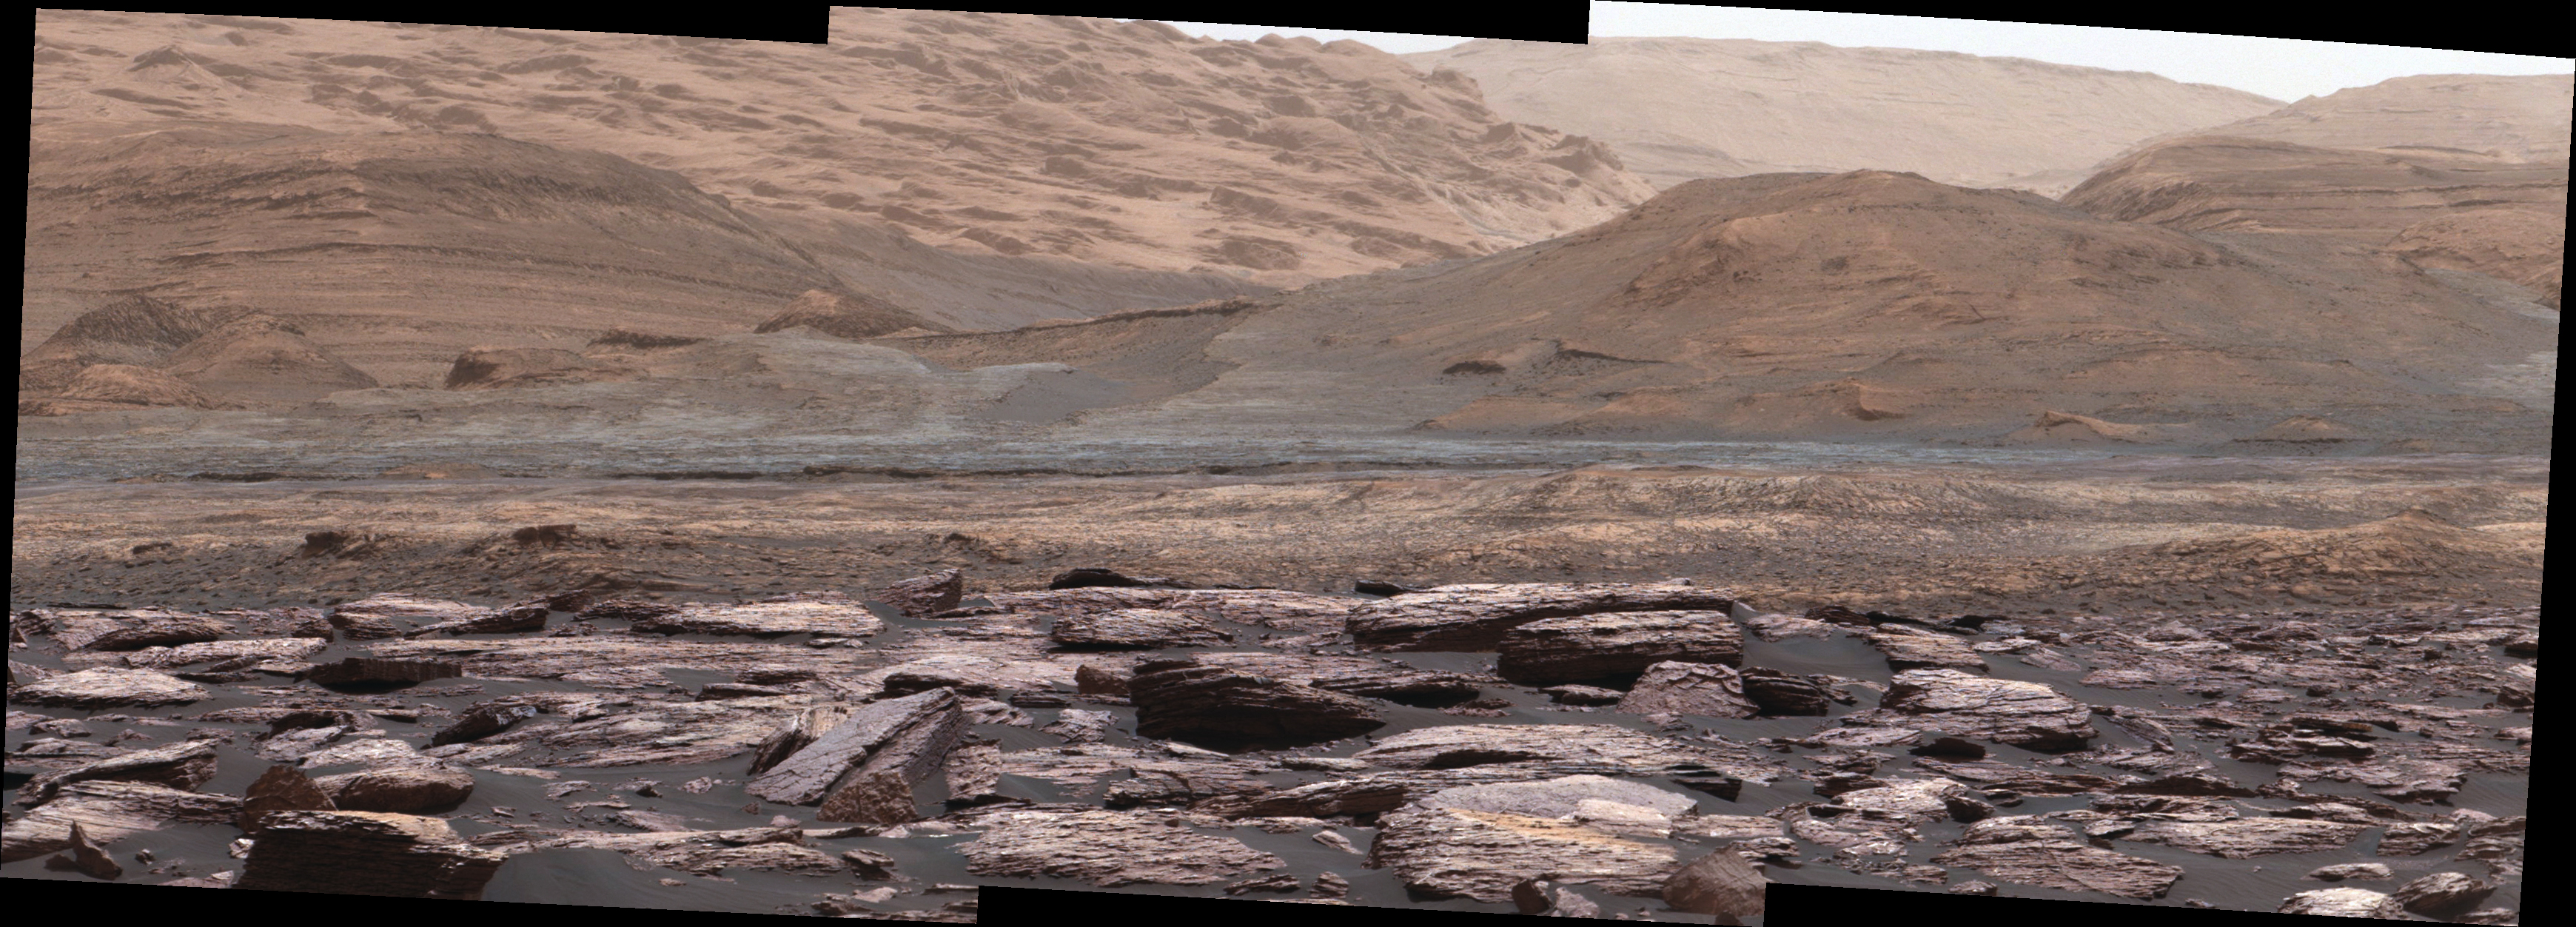 Pierwszy plan zdjęcia sfotografowanego przez Mastcam na łaziku Curiosity ukazuje fioletowe skały, które pojazd badał niedawno. Wzgórza w tle są następnym celem misji Curiosity. Różnorodność kolorów wskazuje na zróżnicowanie środowiska Marsa na różnych etapach jego historii.